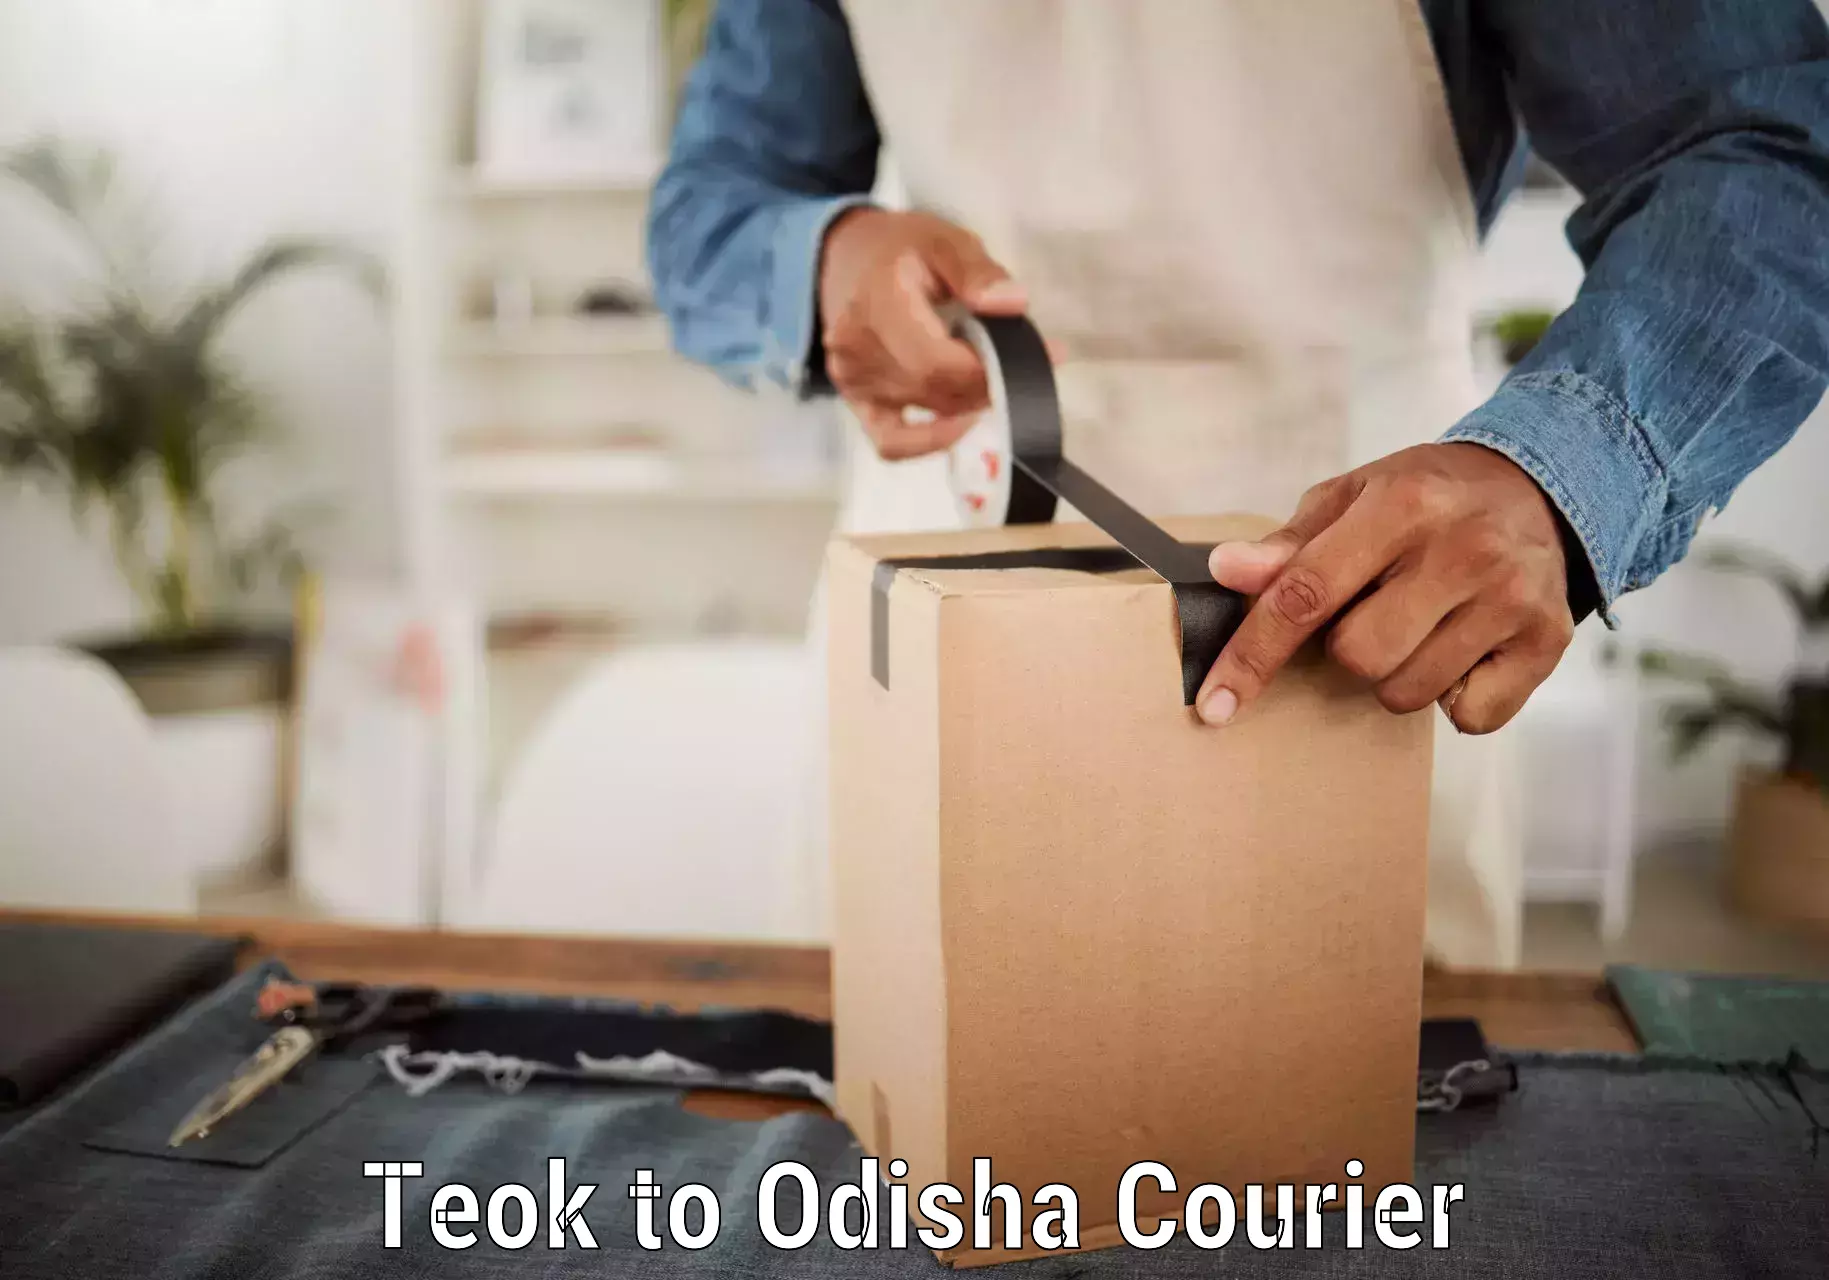 Courier service partnerships Teok to Odisha